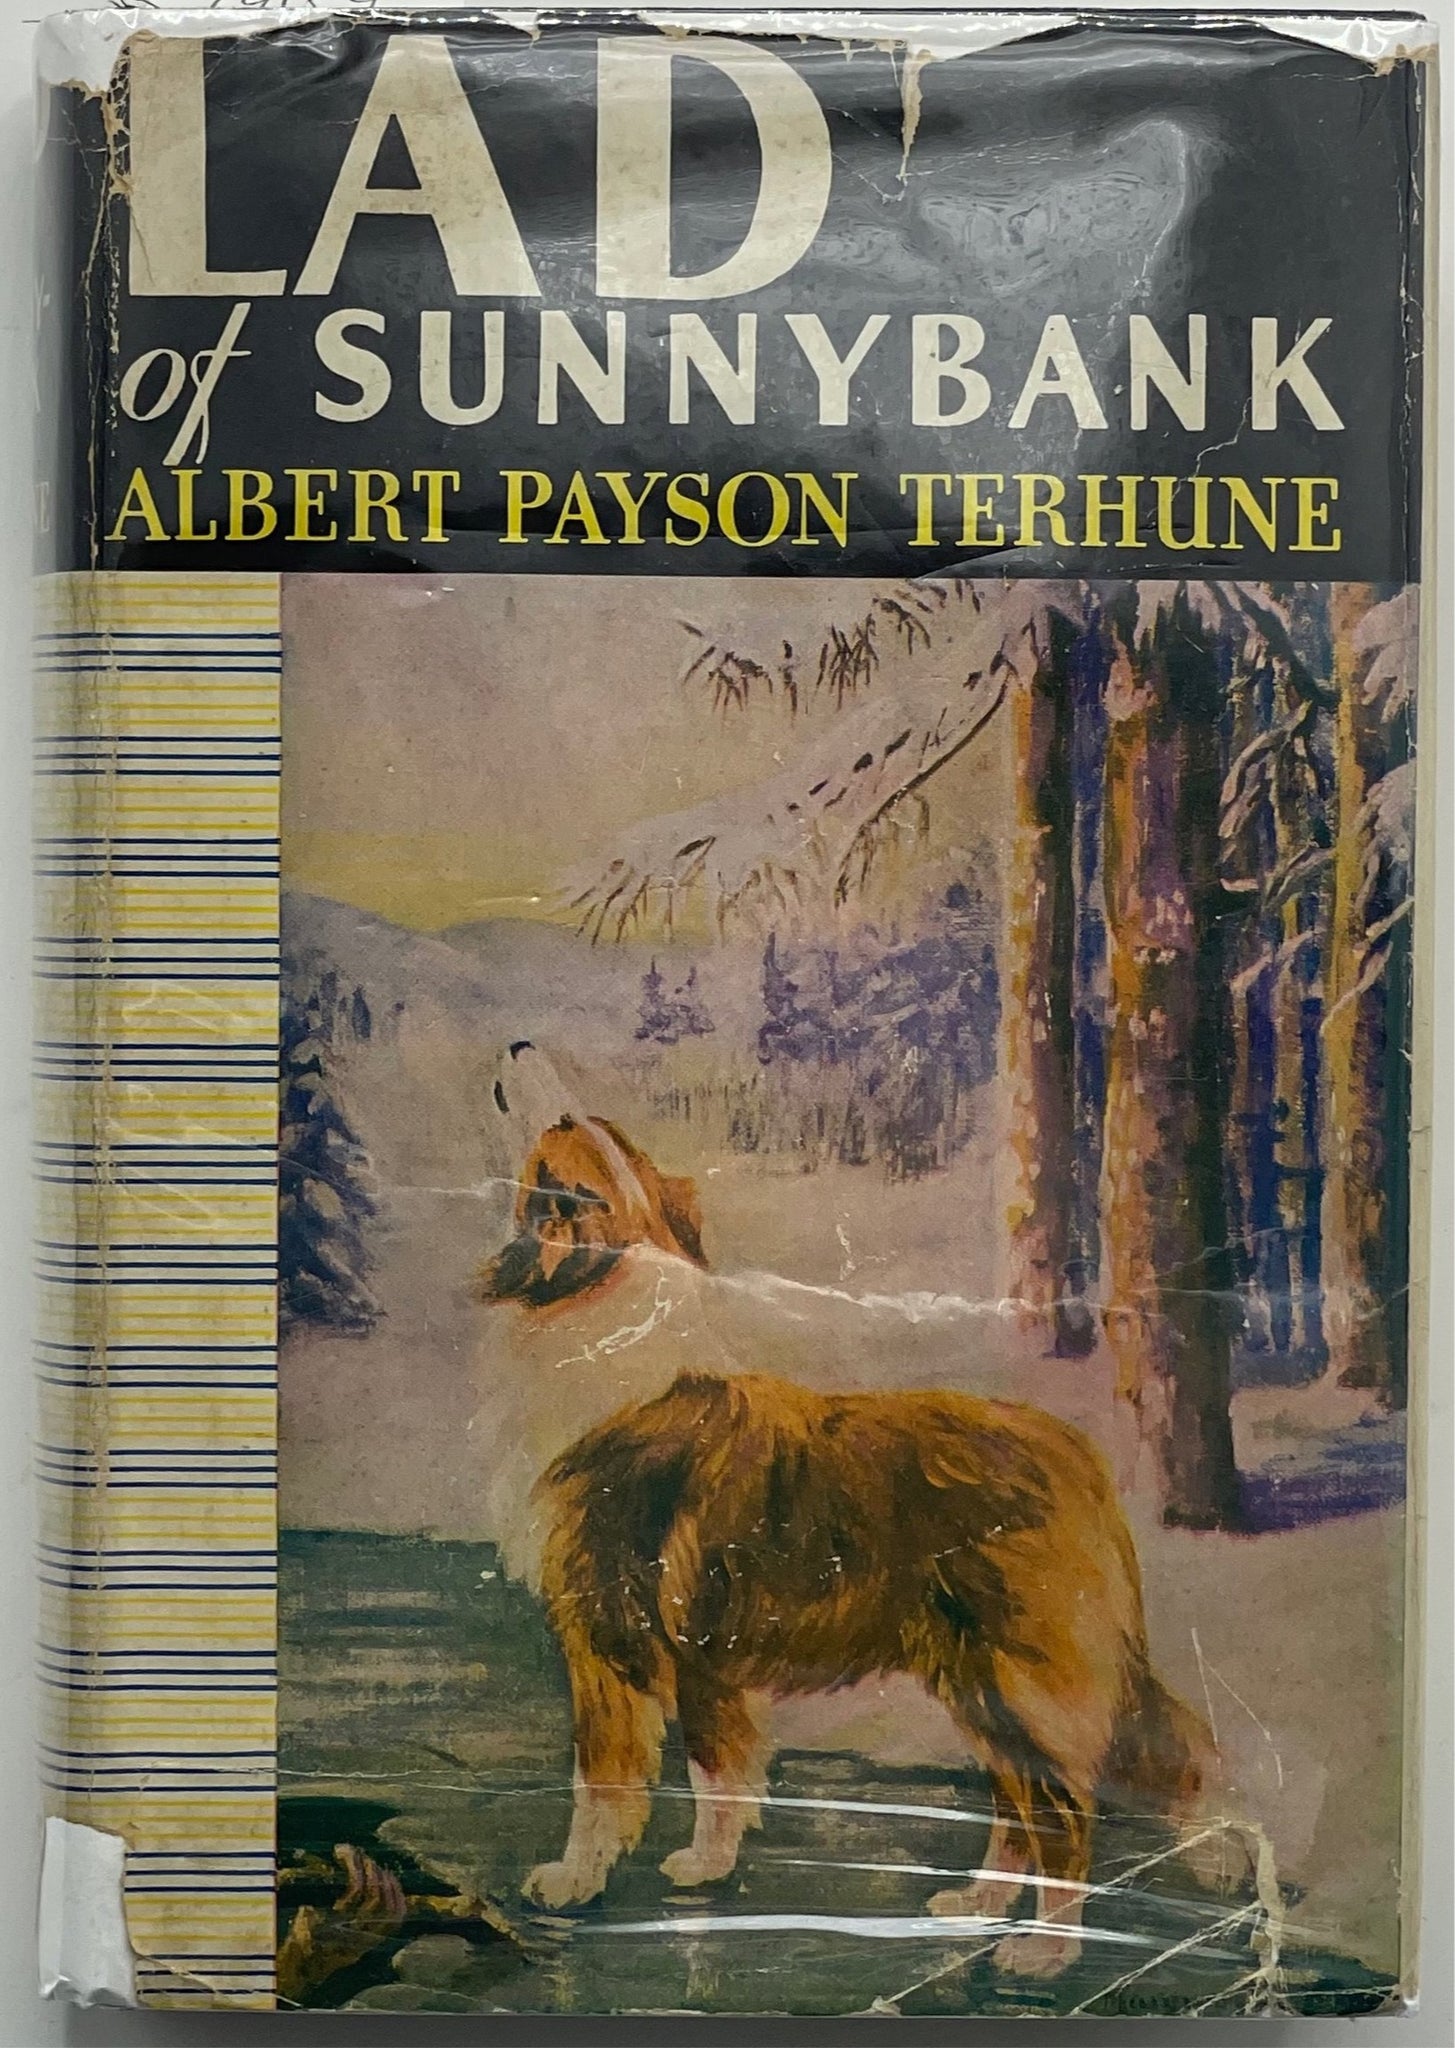 Lad of Sunnybank, Albert Payson Terhune